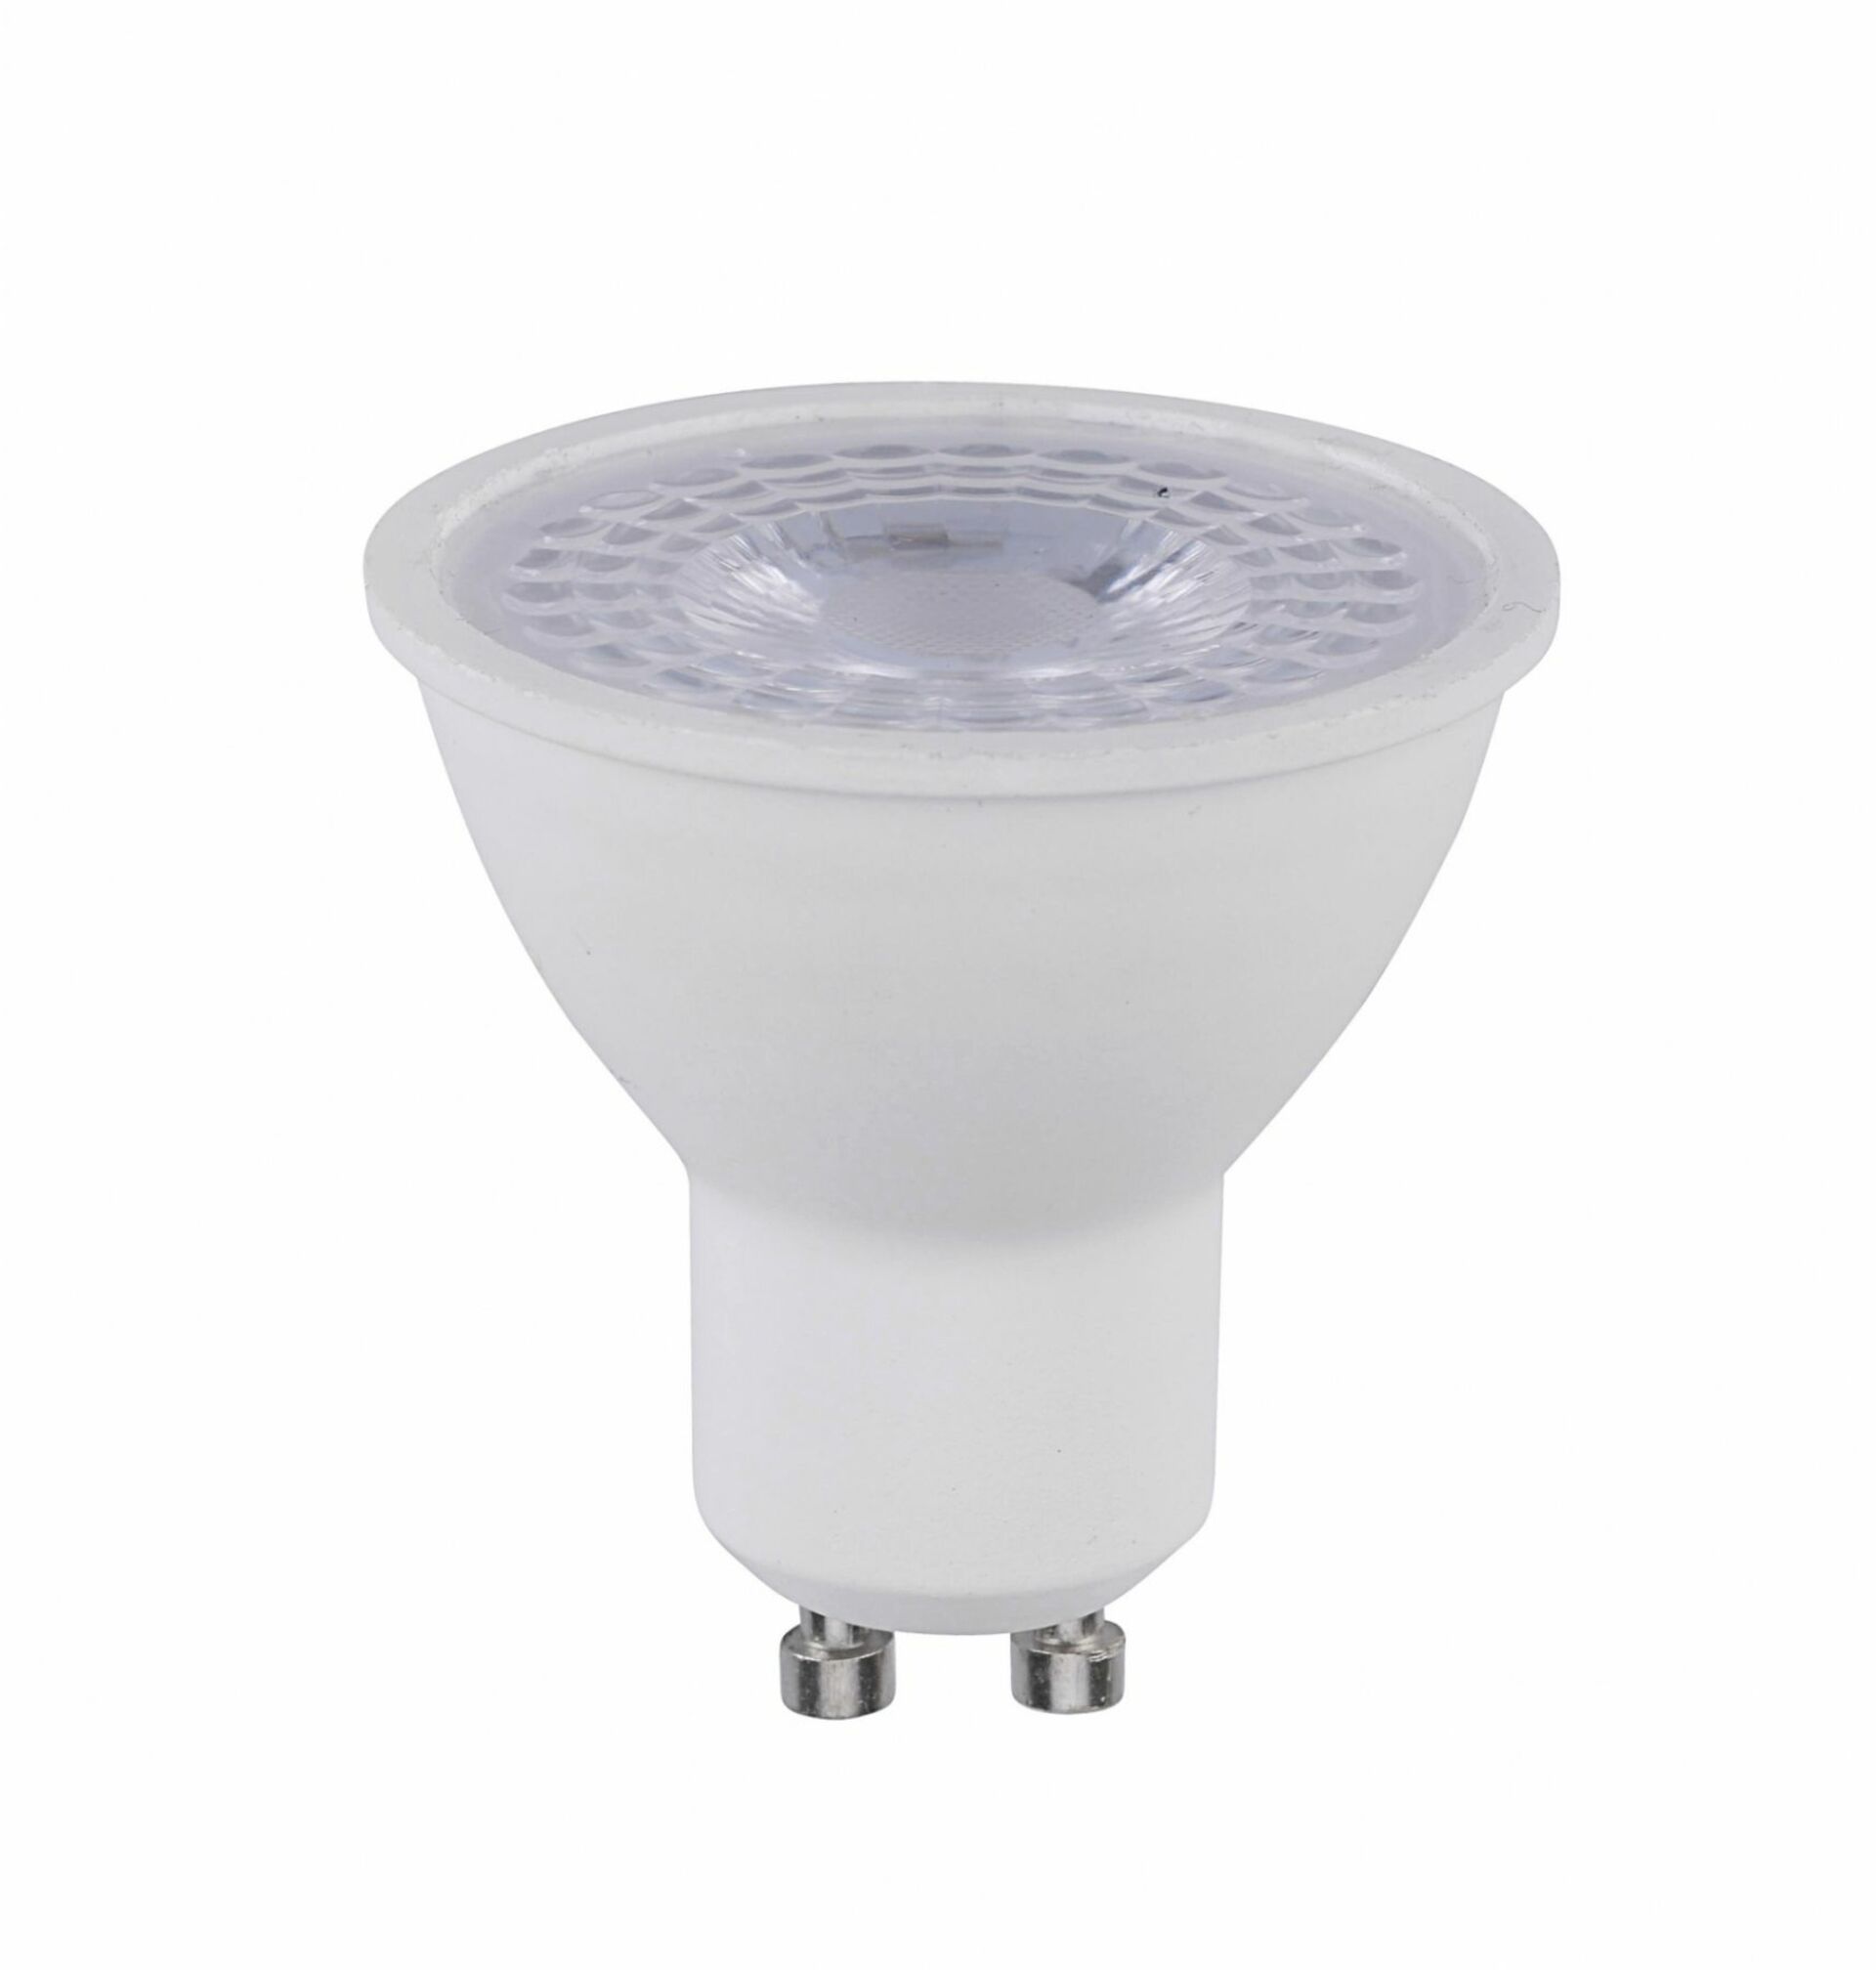 JUST LIGHT LEUCHTEN DIRECT LED žárovka, GU10, 5W, teple bílé světlo SimplyDim 3000K LD 08245